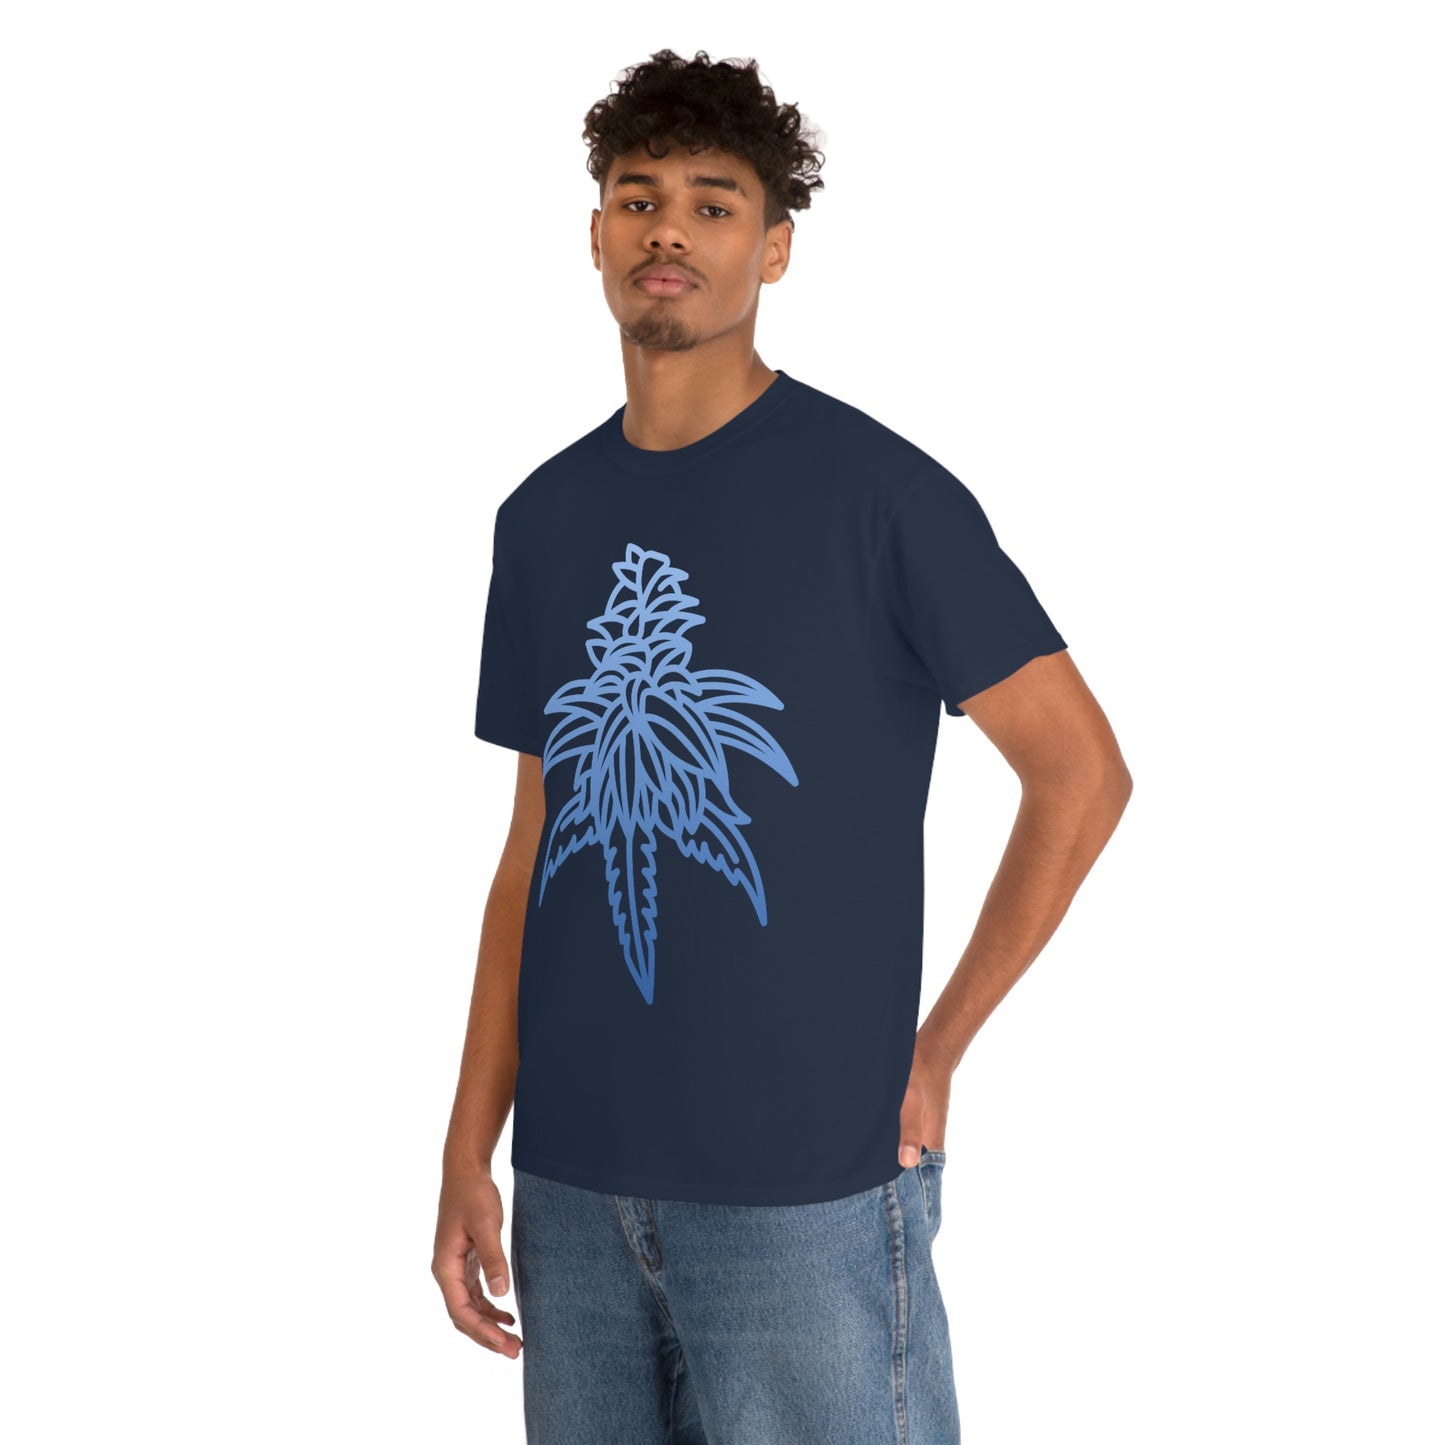 a man wearing a navy Blue Dream Cannabis Tee with a blue cannabis leaf design.